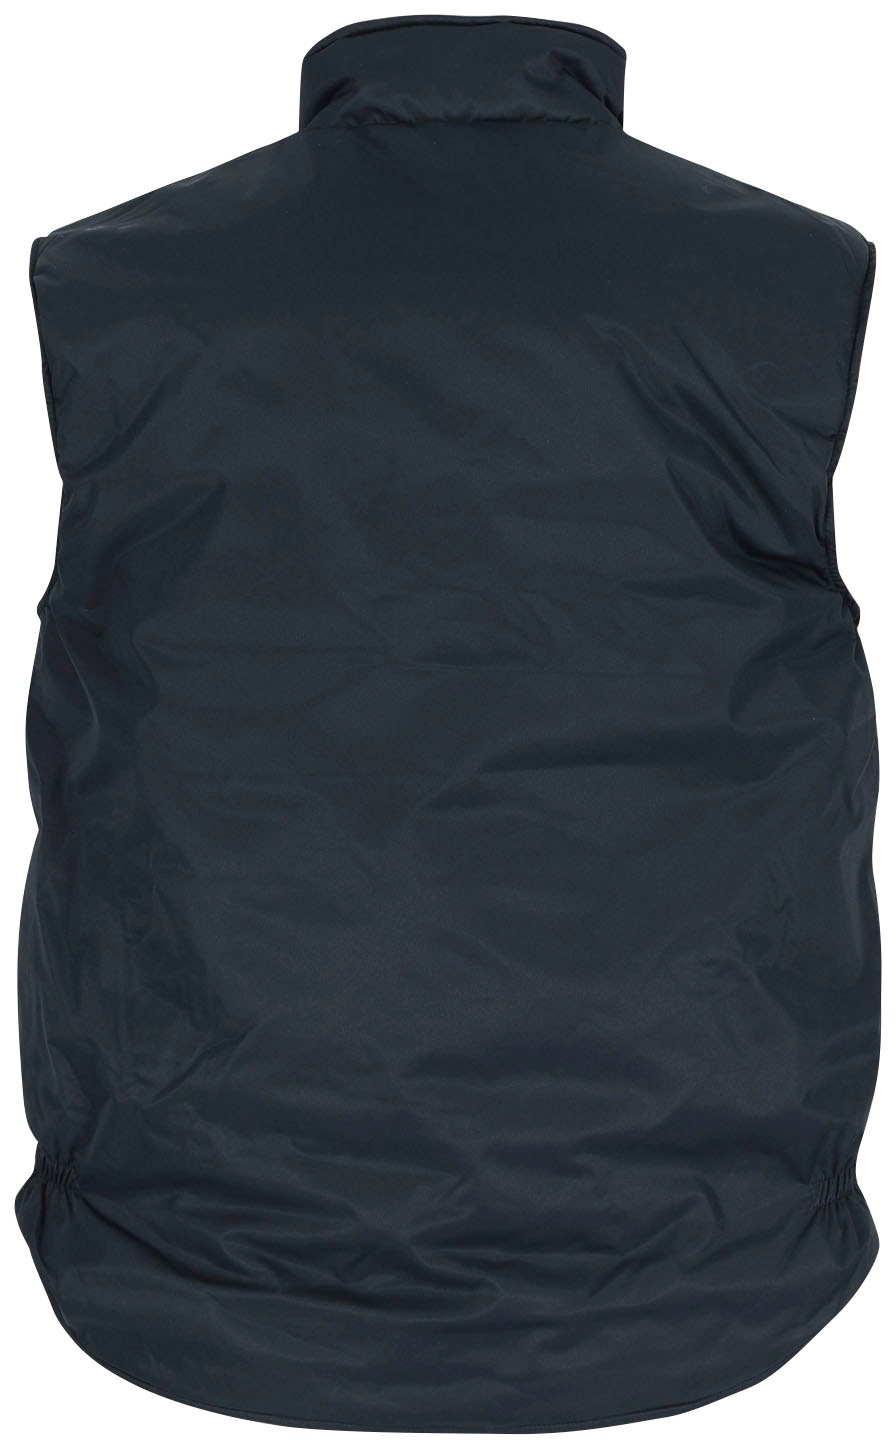 in 5 »Neptune Taschen kaufen elastisch Achsel, der Sweatweste Body-Warmer«, Rückenlänge, Wasserabweisend, lange Herock